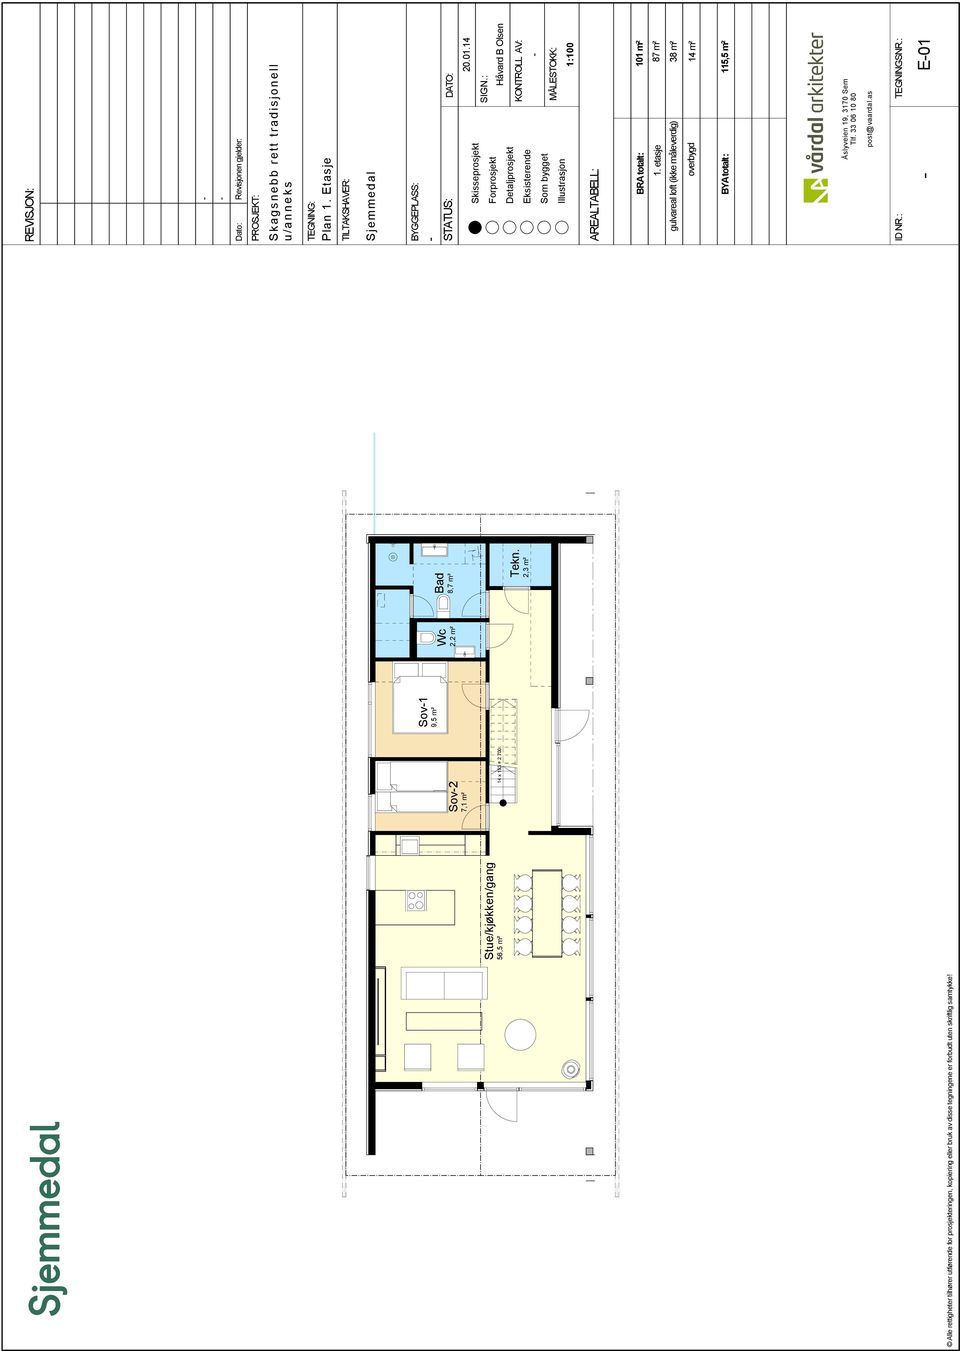 14 MÅLESTOKK: 1:100 BRA totalt: 101 m² 1. etasje gulvareal loft (ikke måleverdig) BYA totalt: 87 m² 38 m² overbygd 14 m² 115,5 m² TEGNINGSNR.